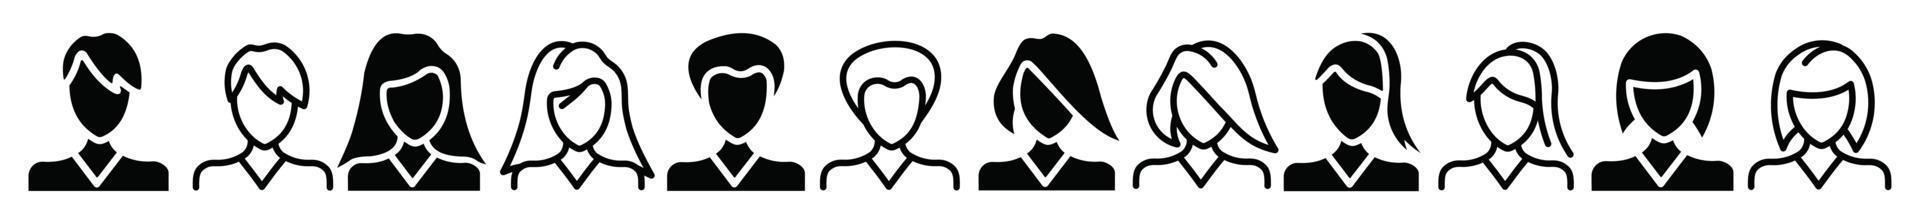 conjunto de iconos de avatar de personas, icono plano vectorial como mujer vector